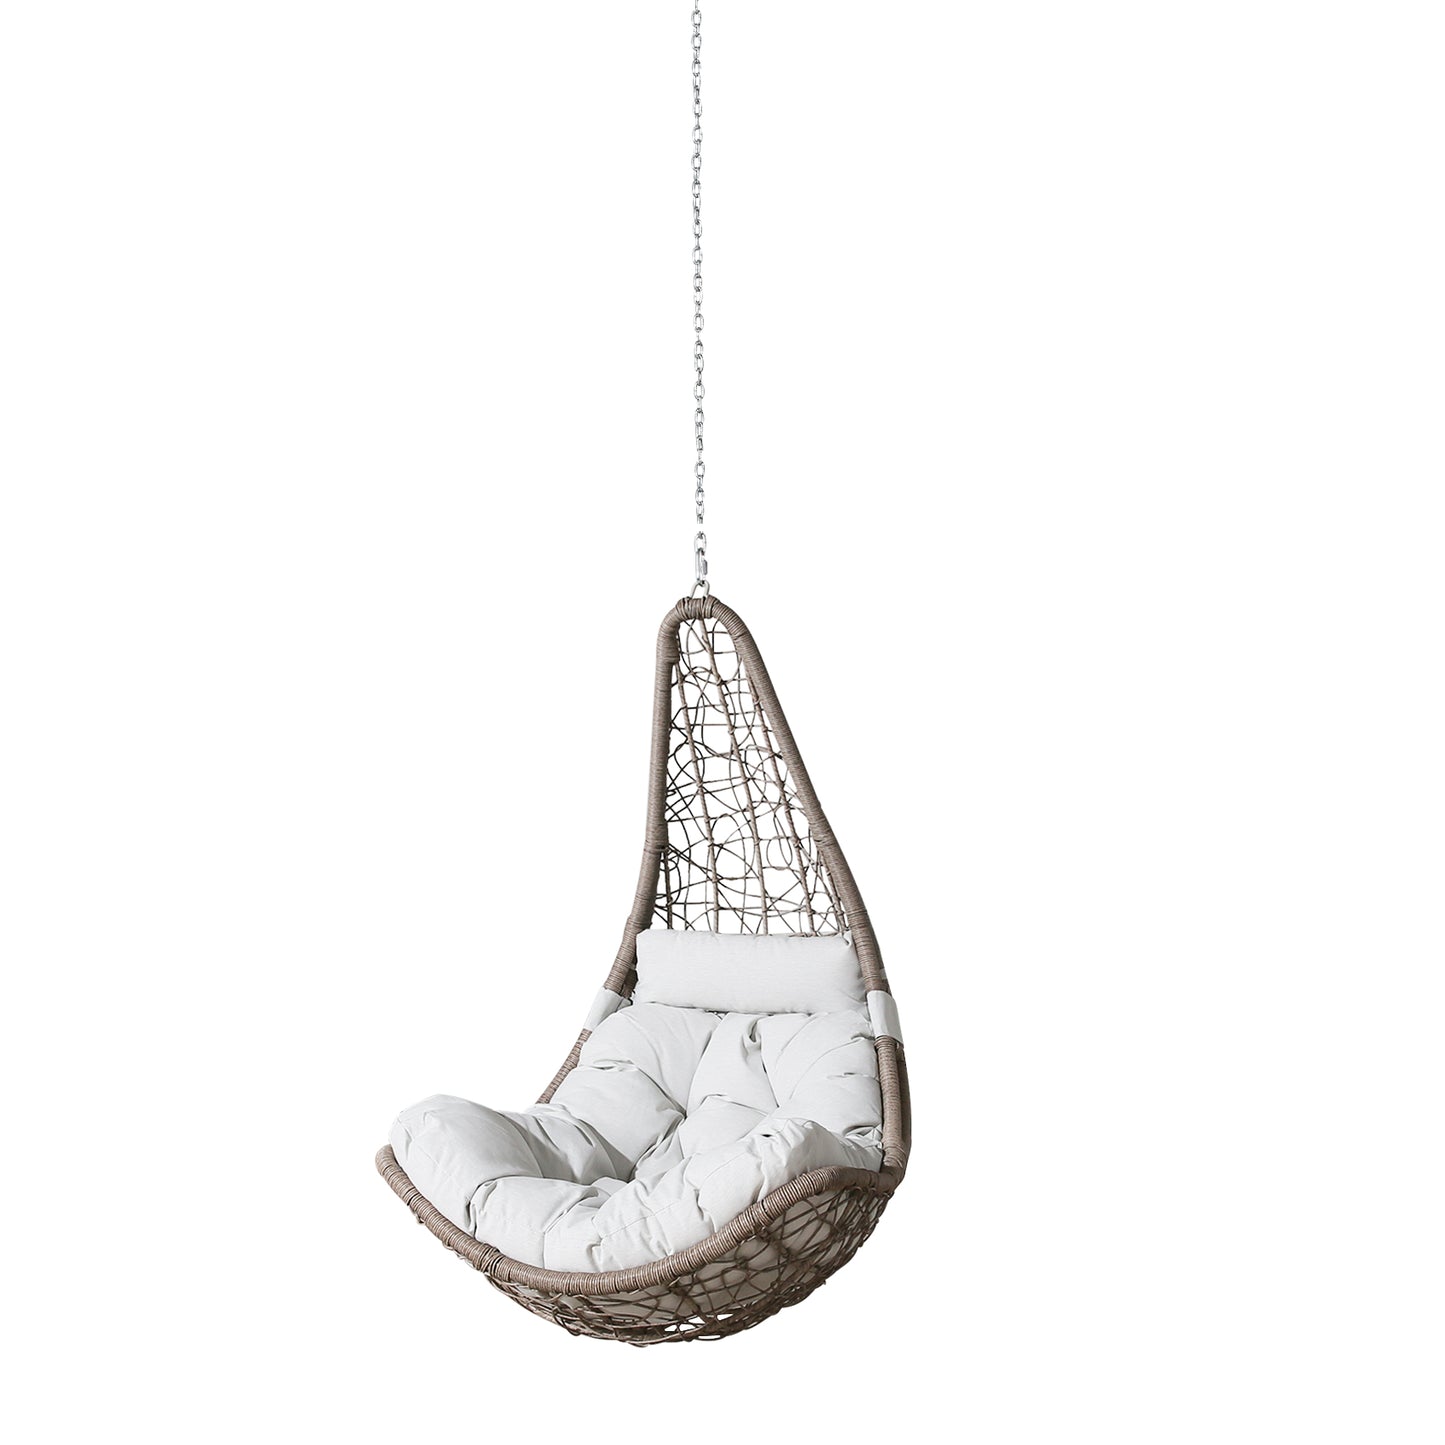 Outdoor Wicker Hanging Chair Swing, Patio Hanging Basket Swing Chair with Hanging Steel Chain(Beige)